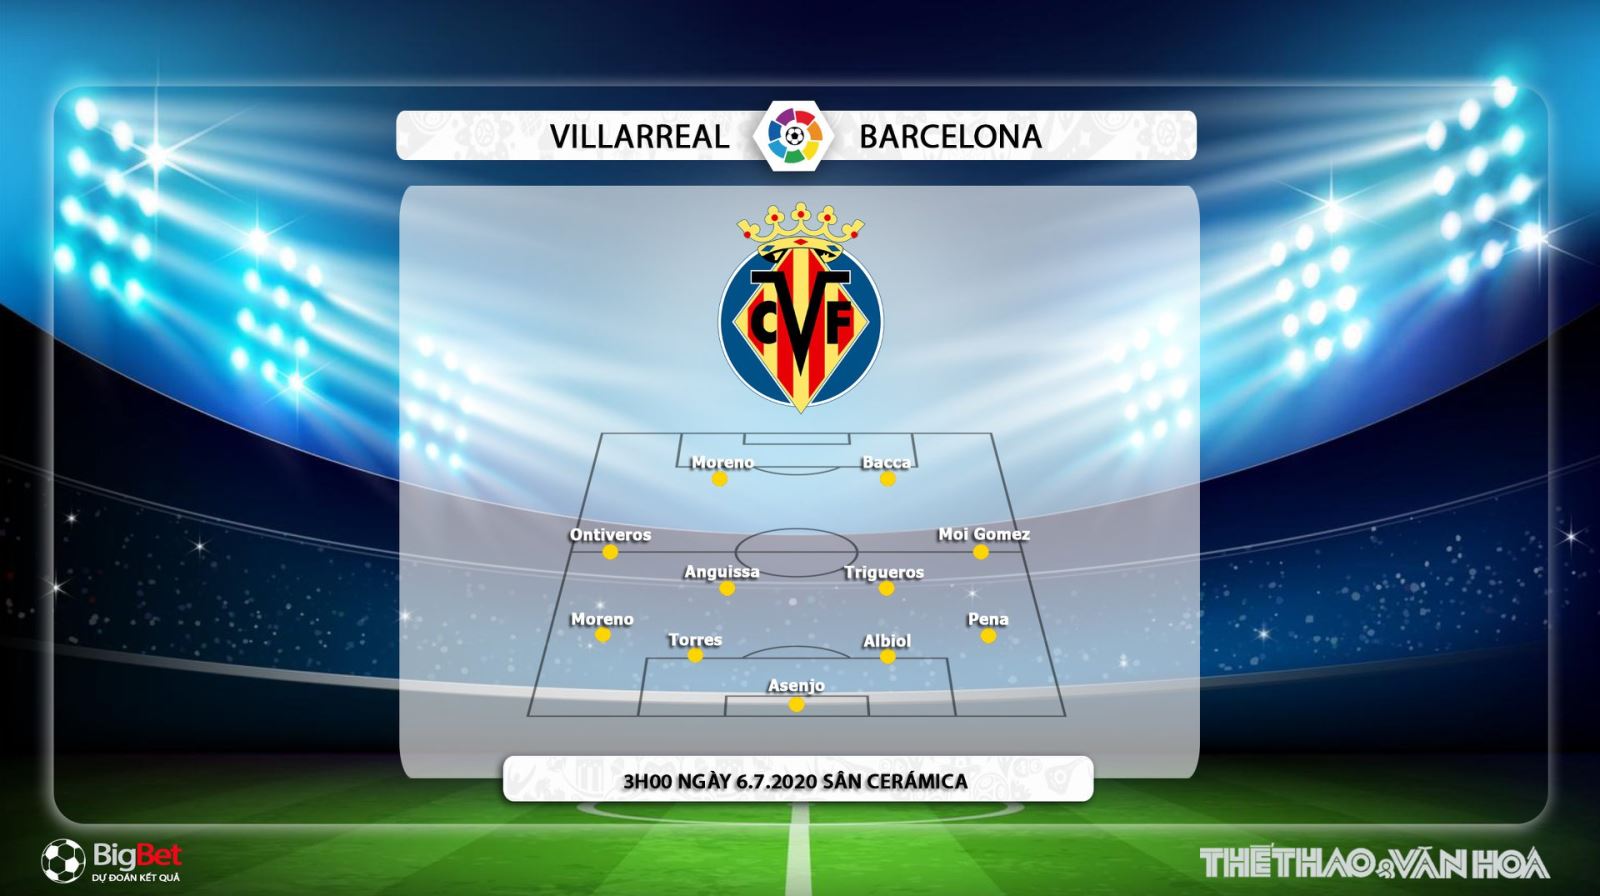 Villarreal vs Barcelona, Villarreal, Barcelona, Barca, bóng đá, bong da, nhận định bóng đá, kèo bóng đá